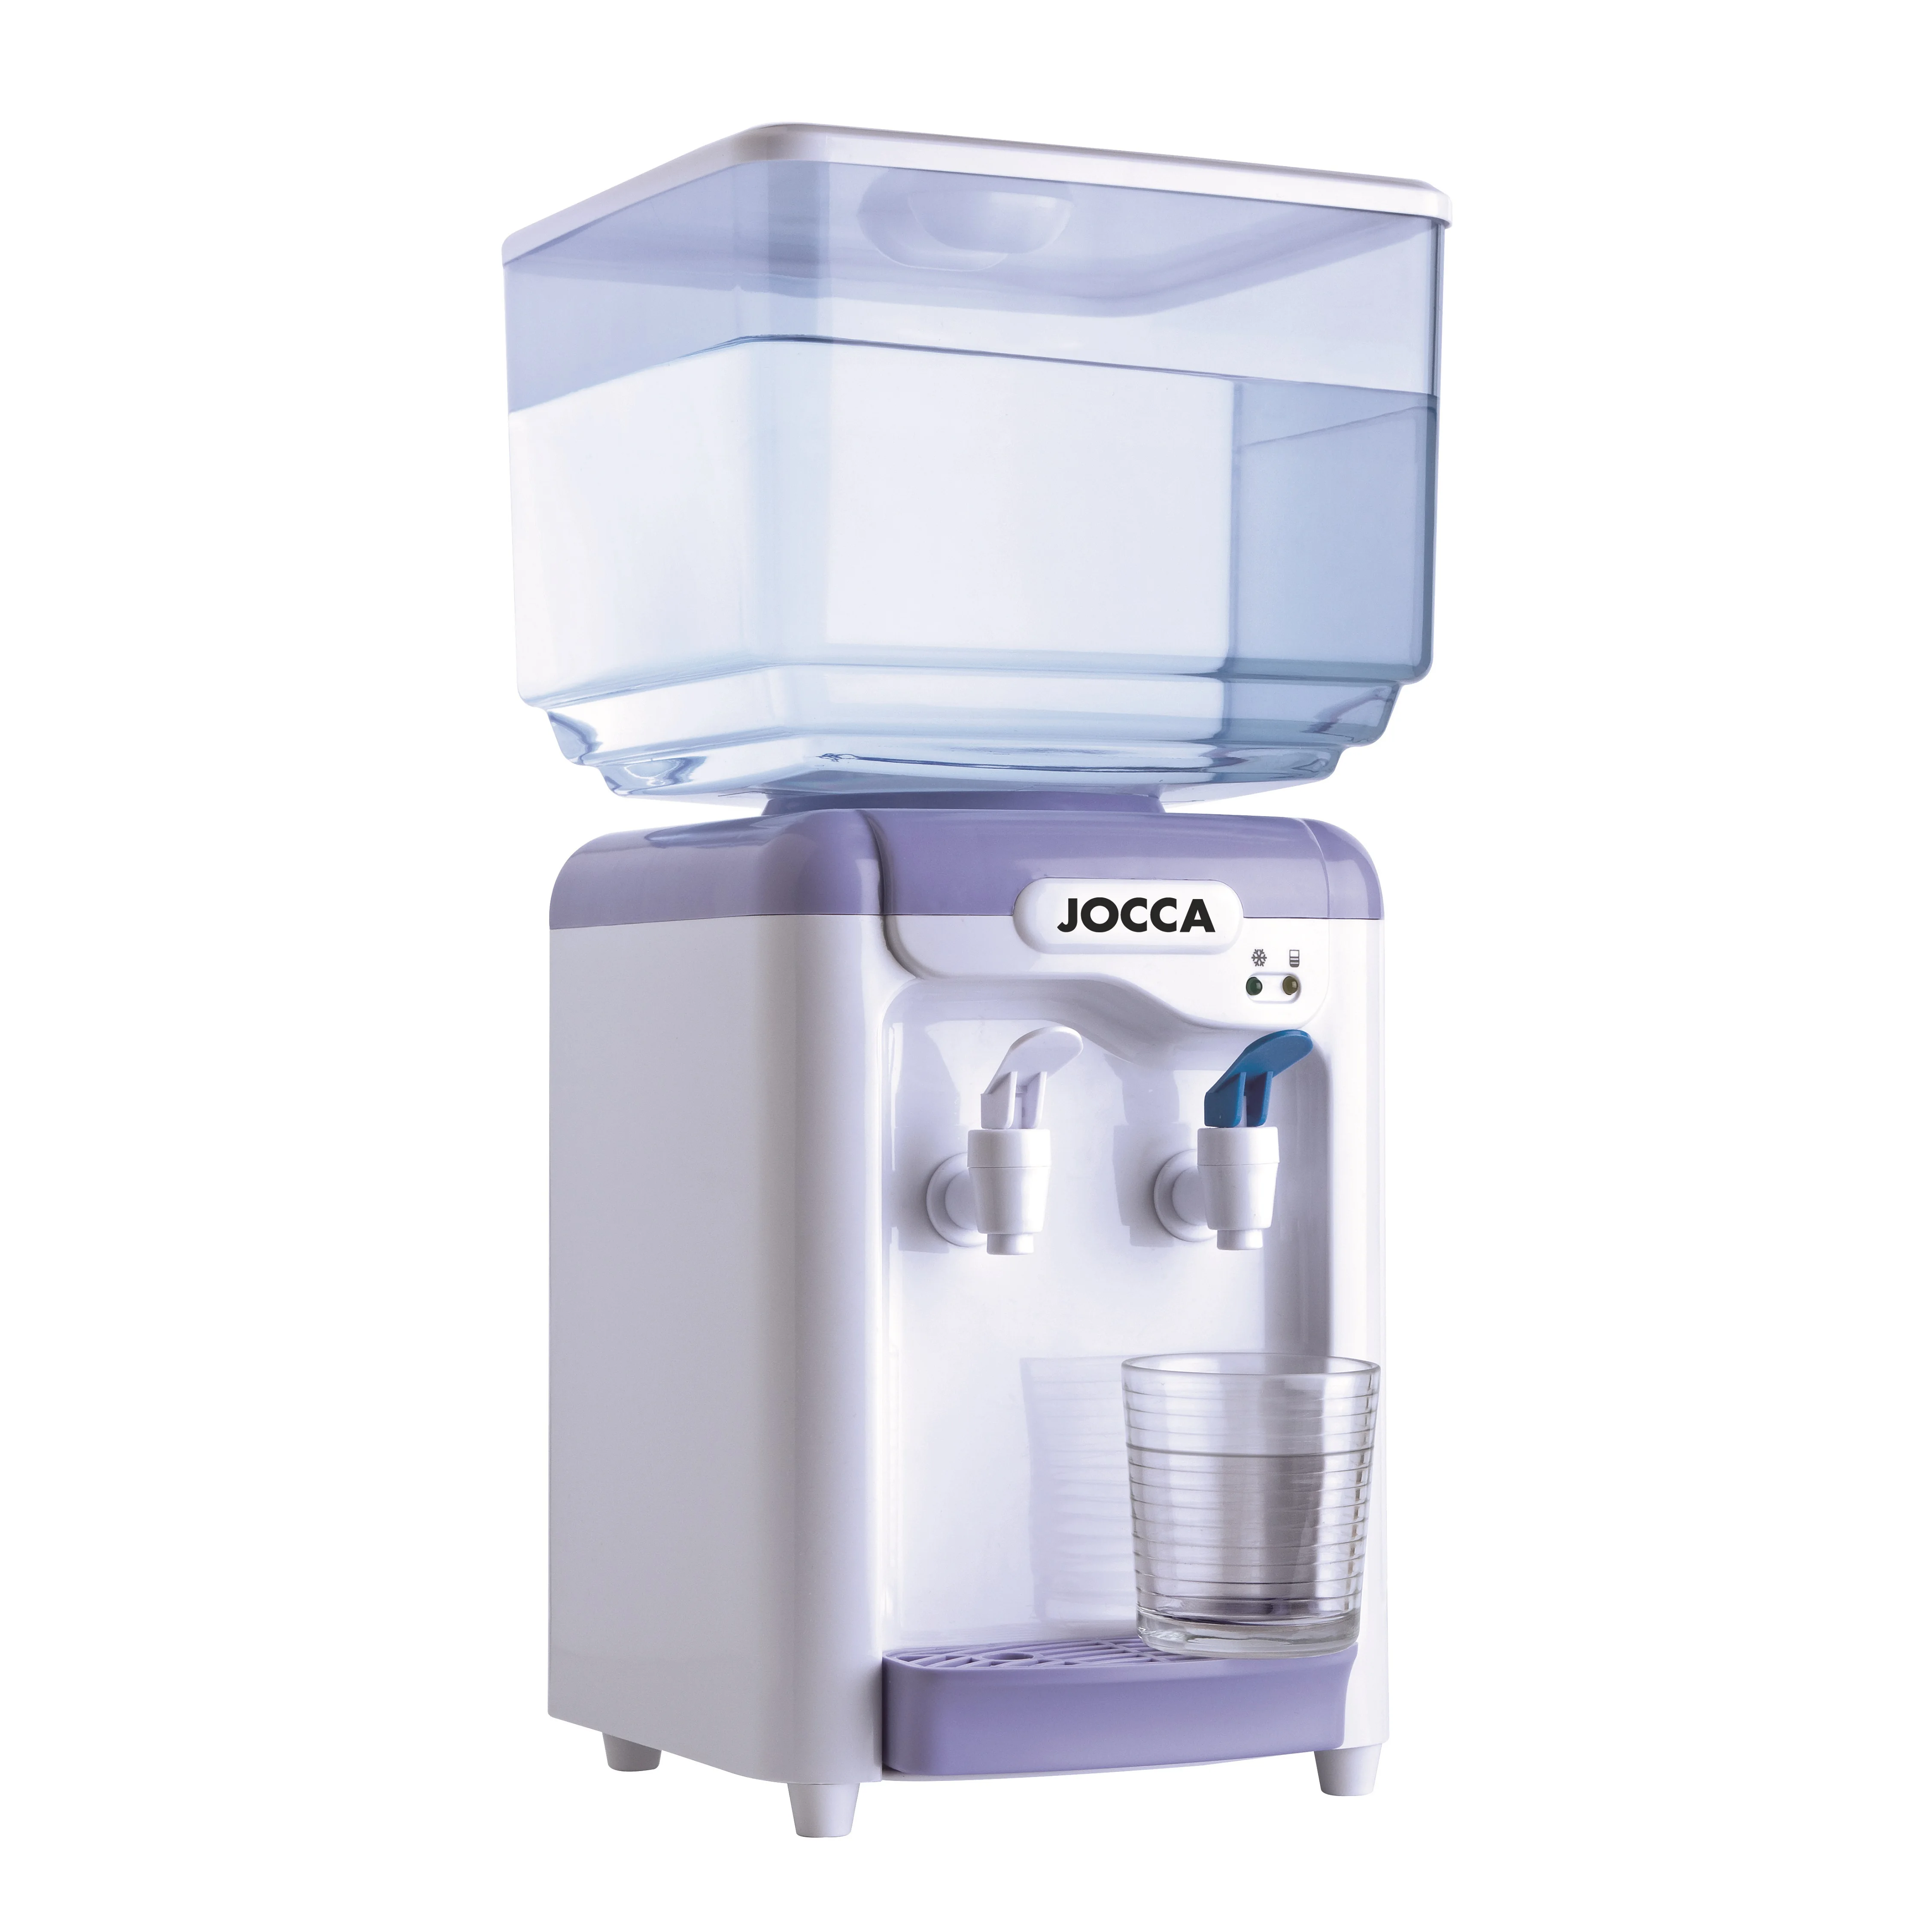 Дозатор холодной воды марки JOCCA. Электрический охладитель напитков или холодных